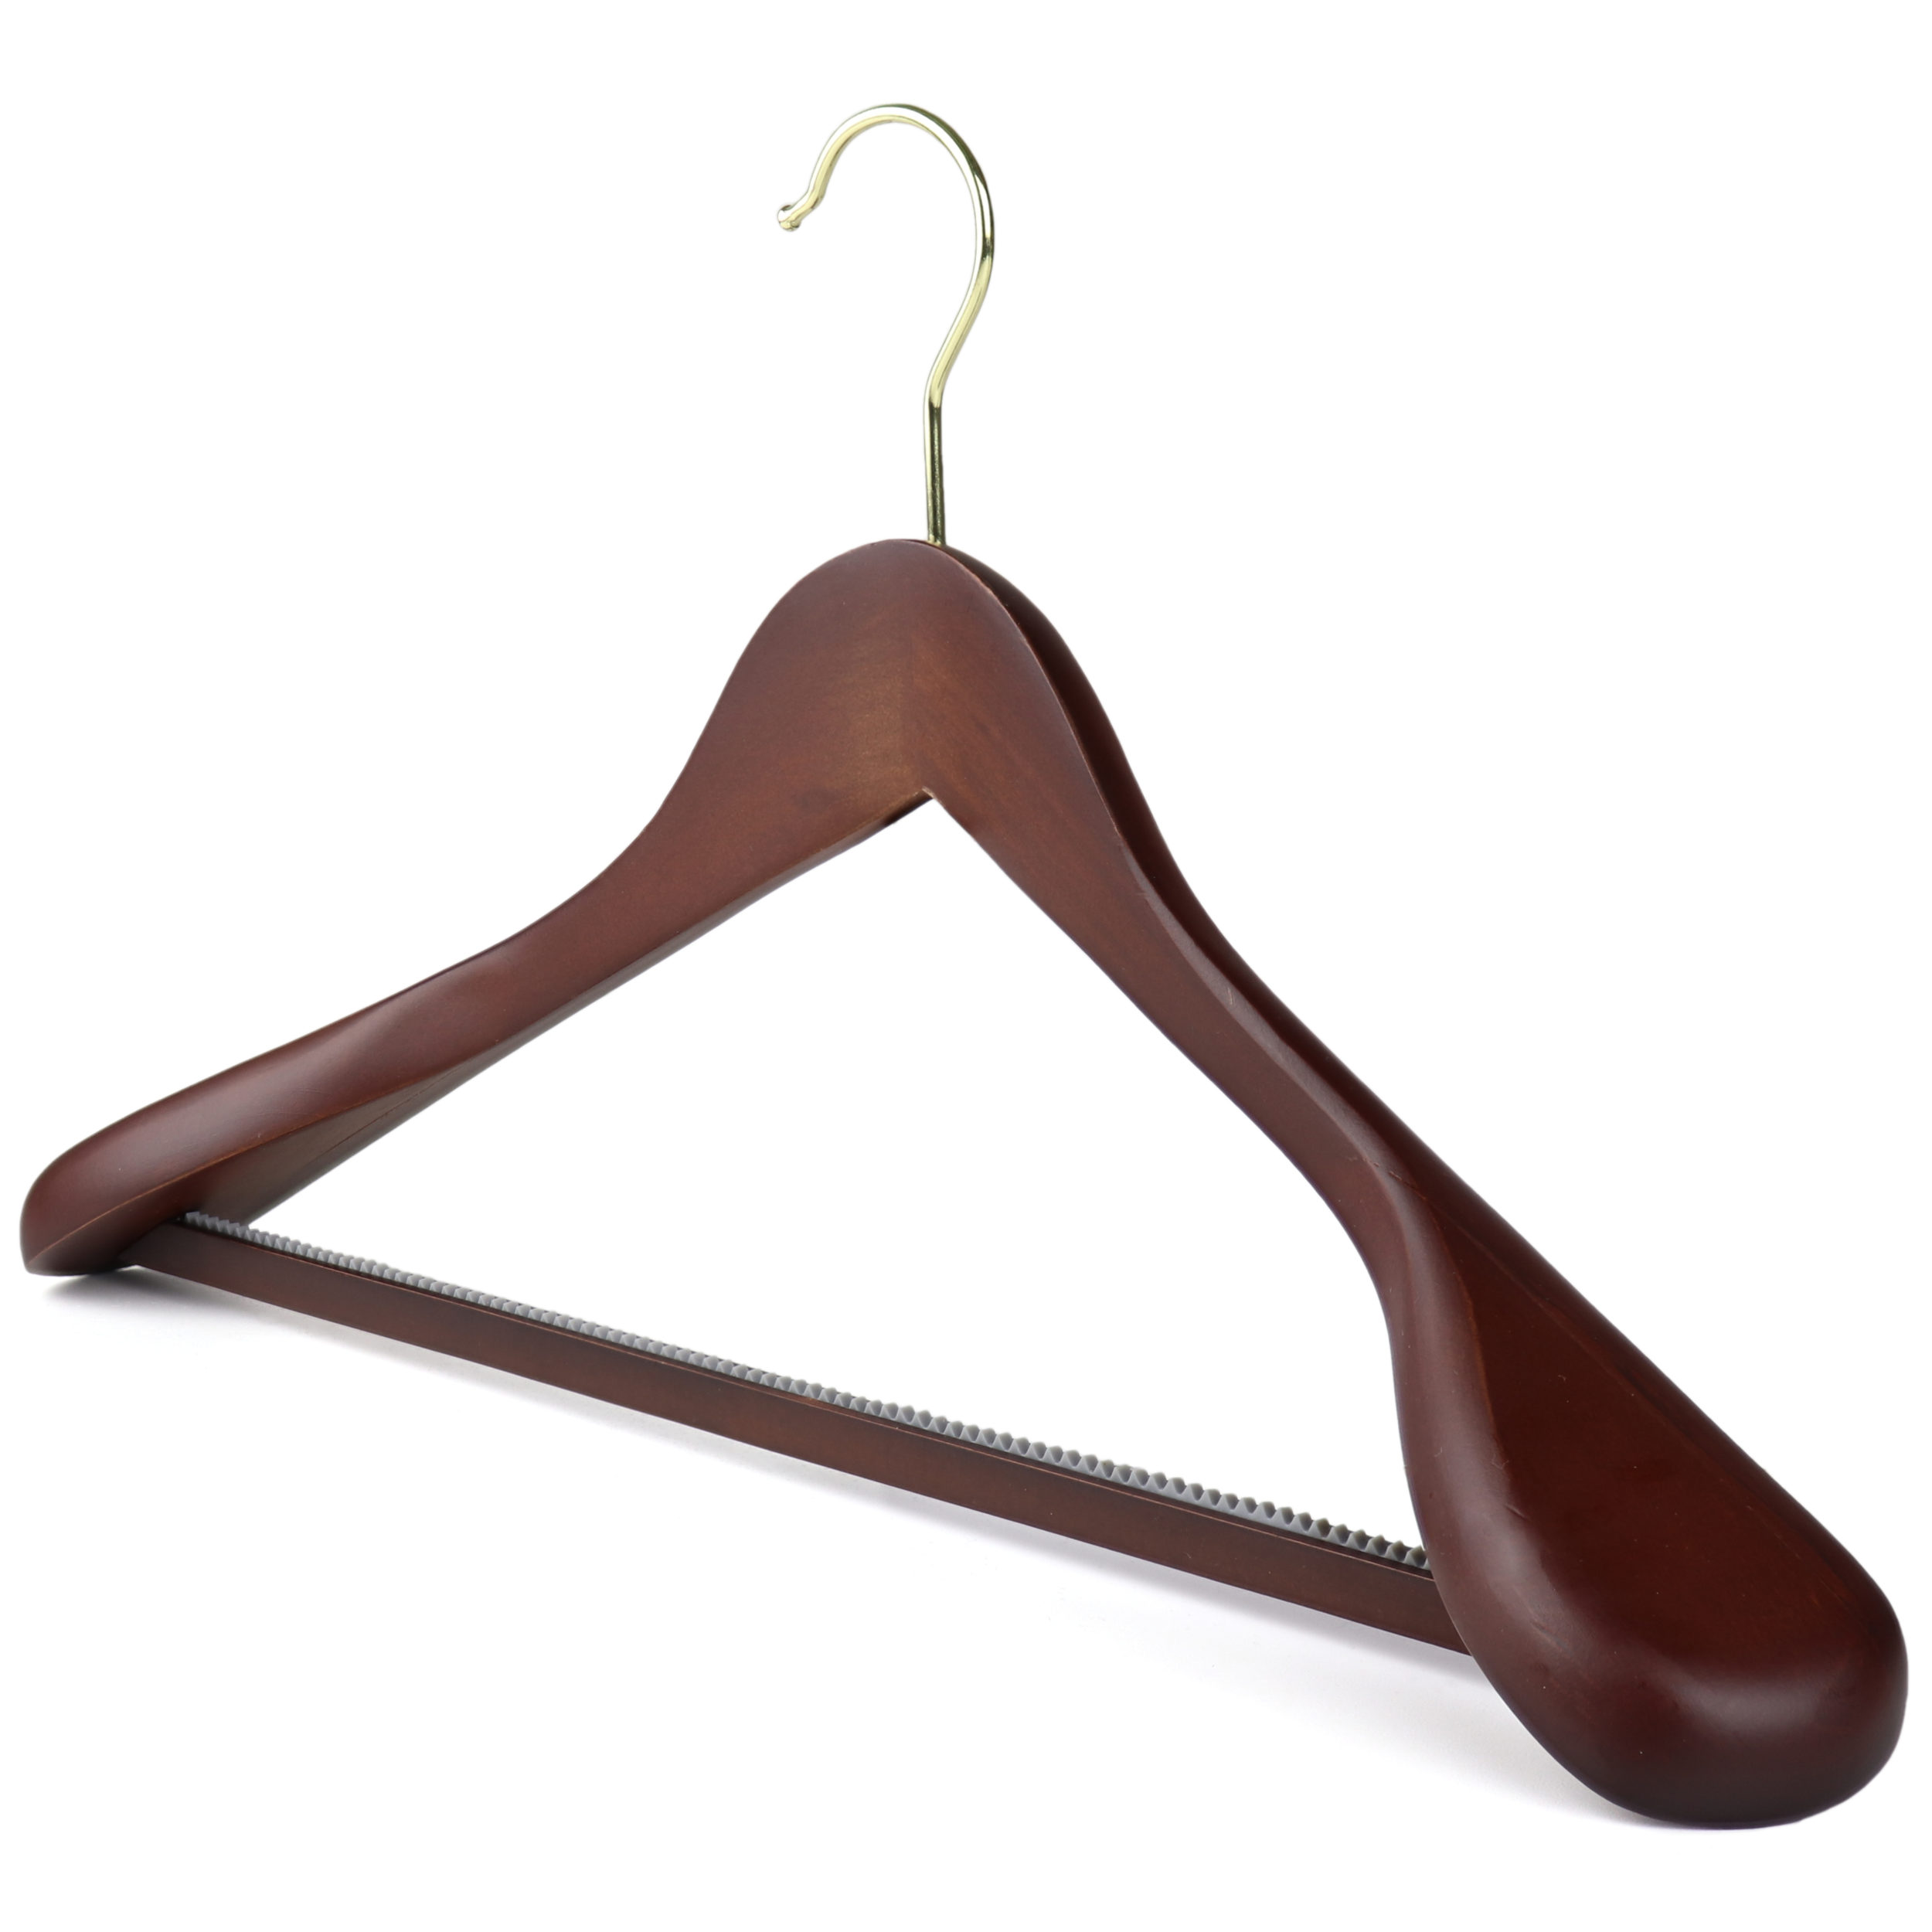 44 cm HANGERWORLD 20 Dark Walnut Non-Slip Wooden Suit Bar Hangers Broad Shoulders 